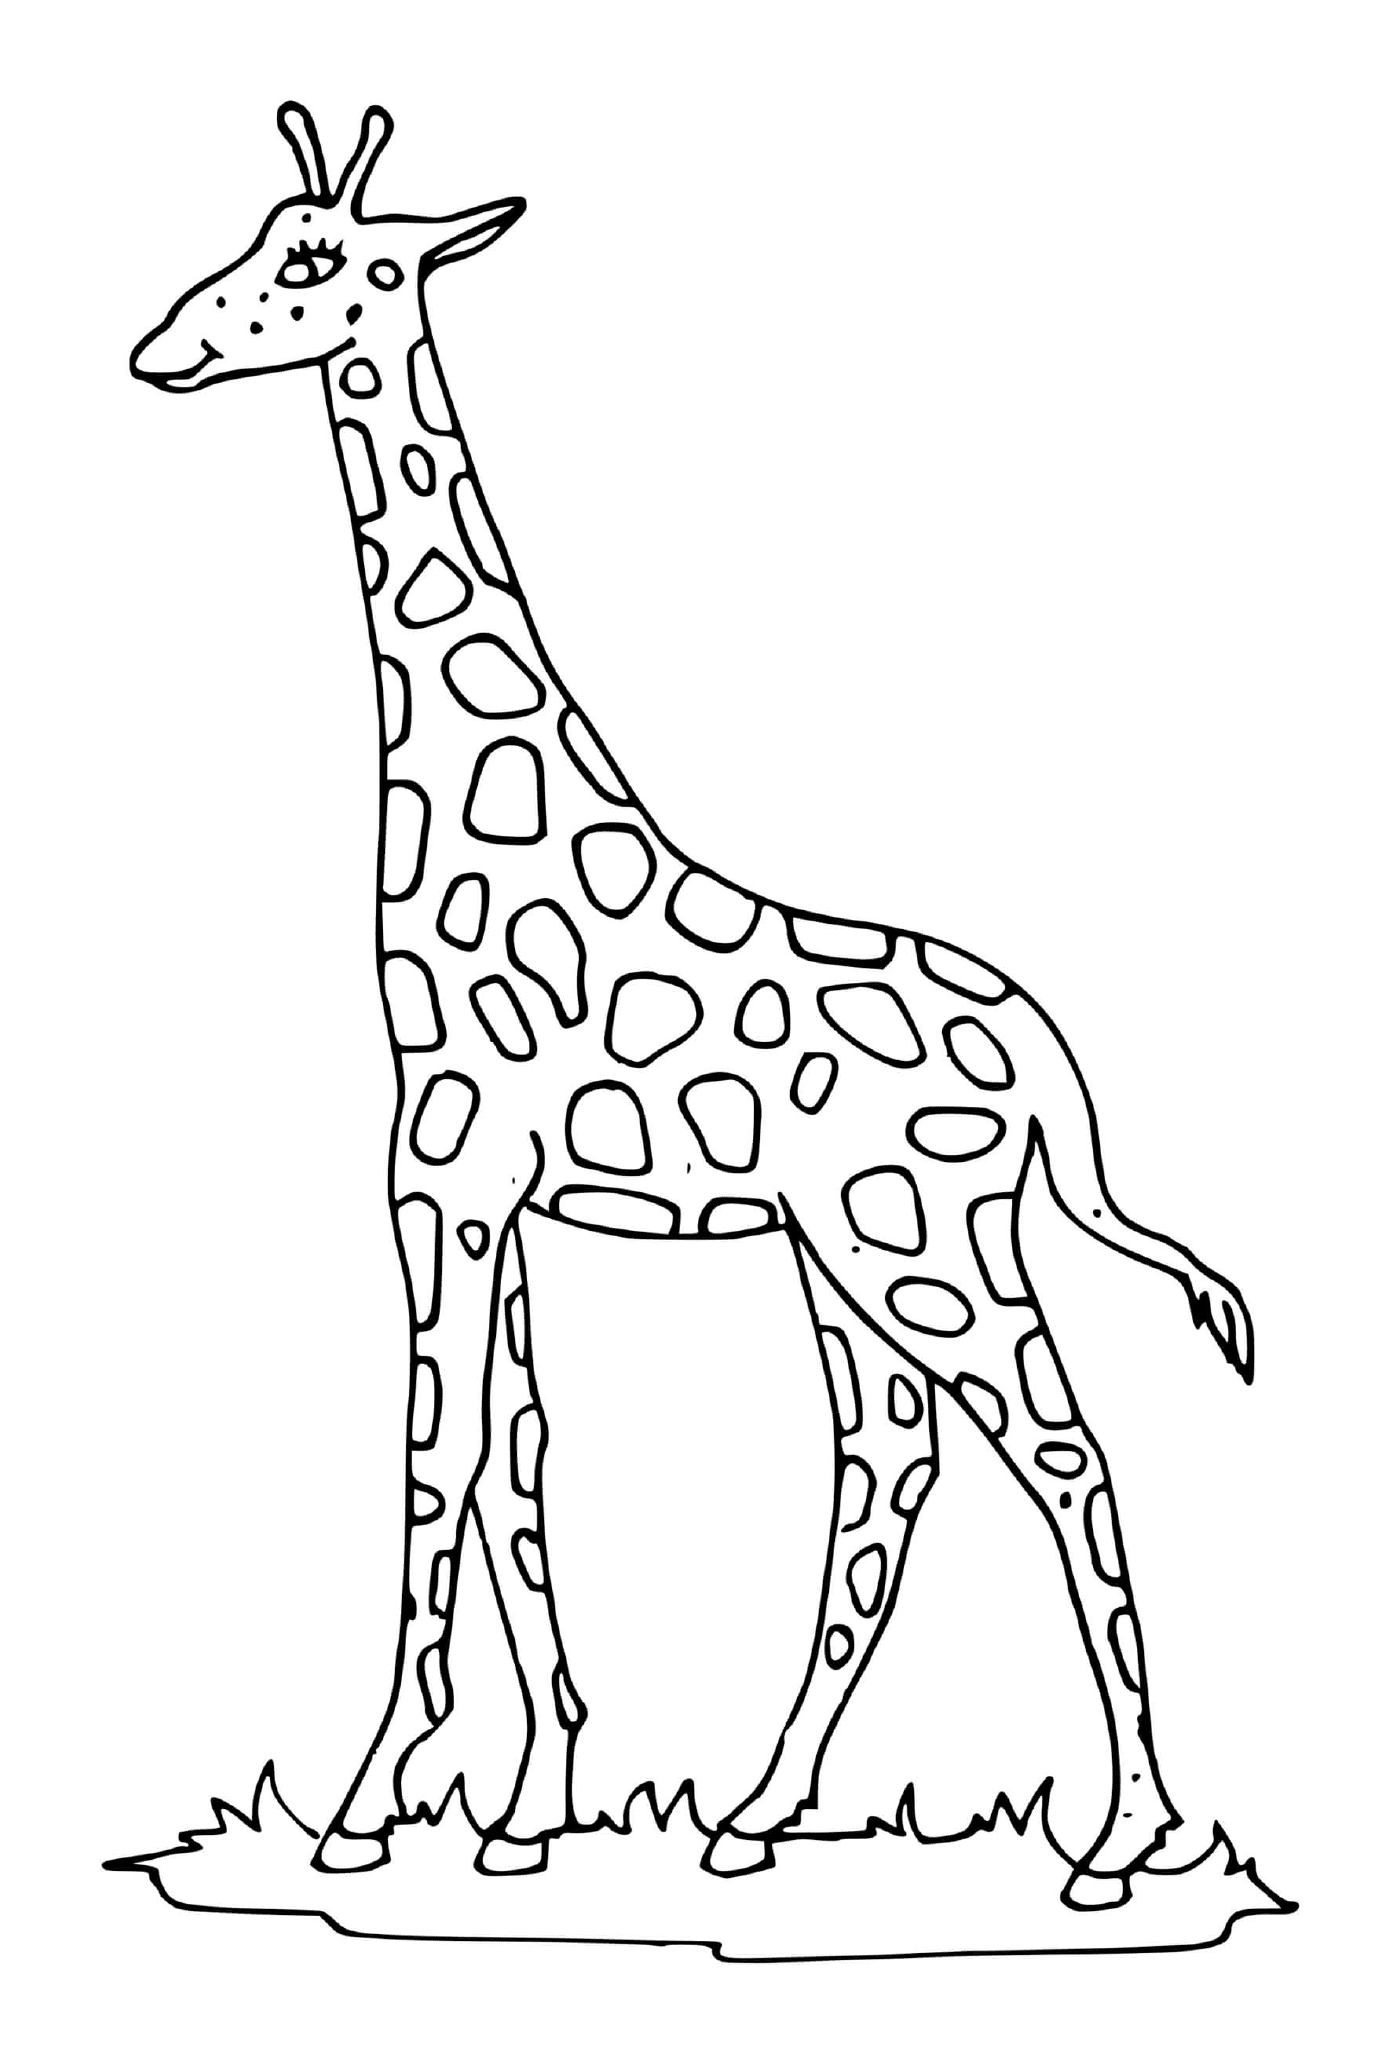  Гирафе с длинной шеей 